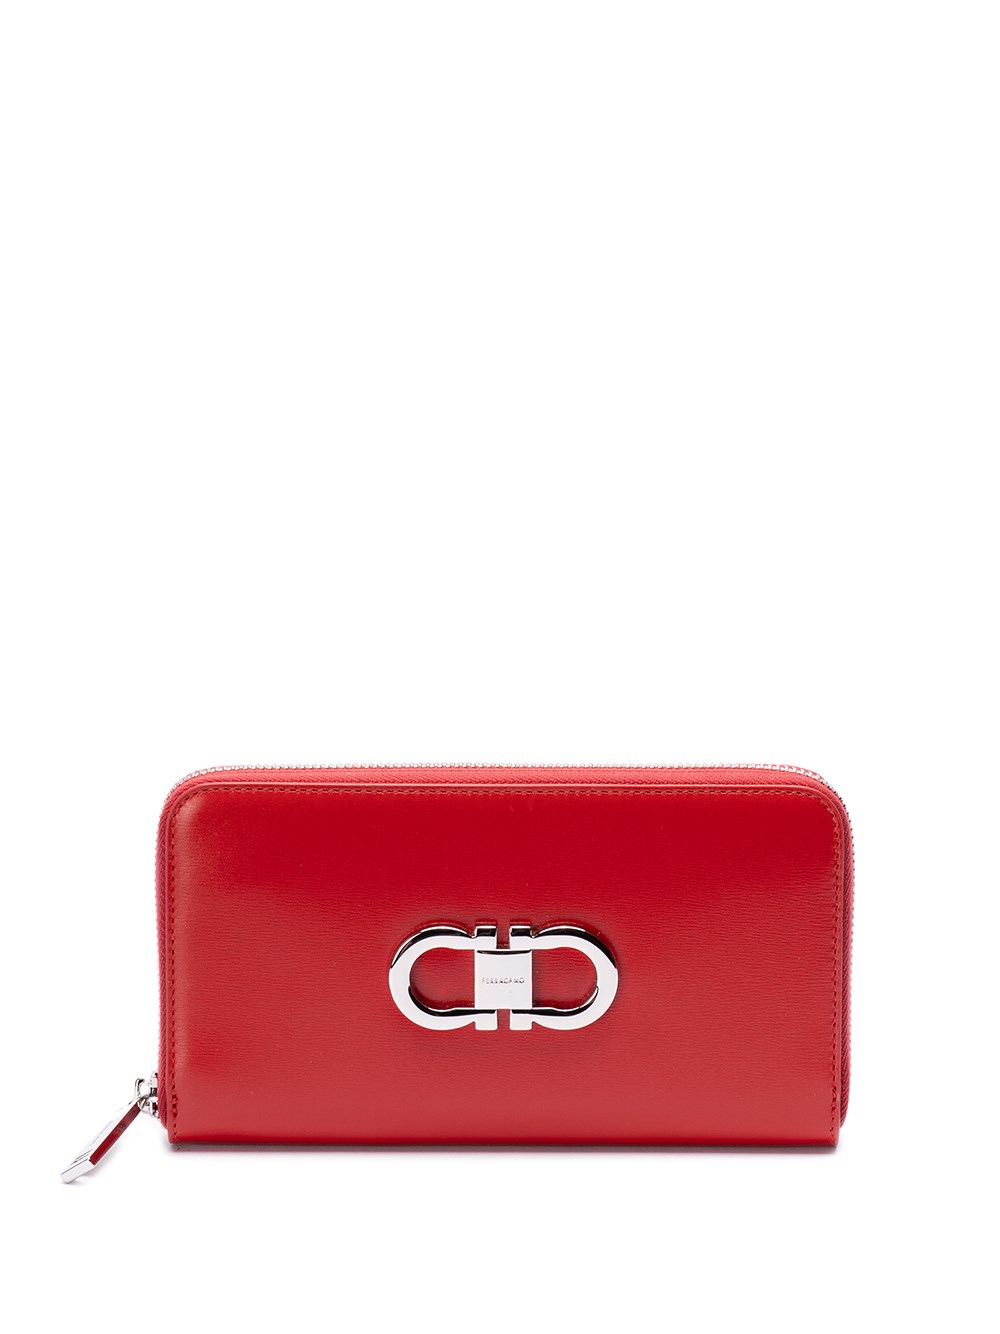 Ferragamo `double Gancio` Continental Wallet In Red